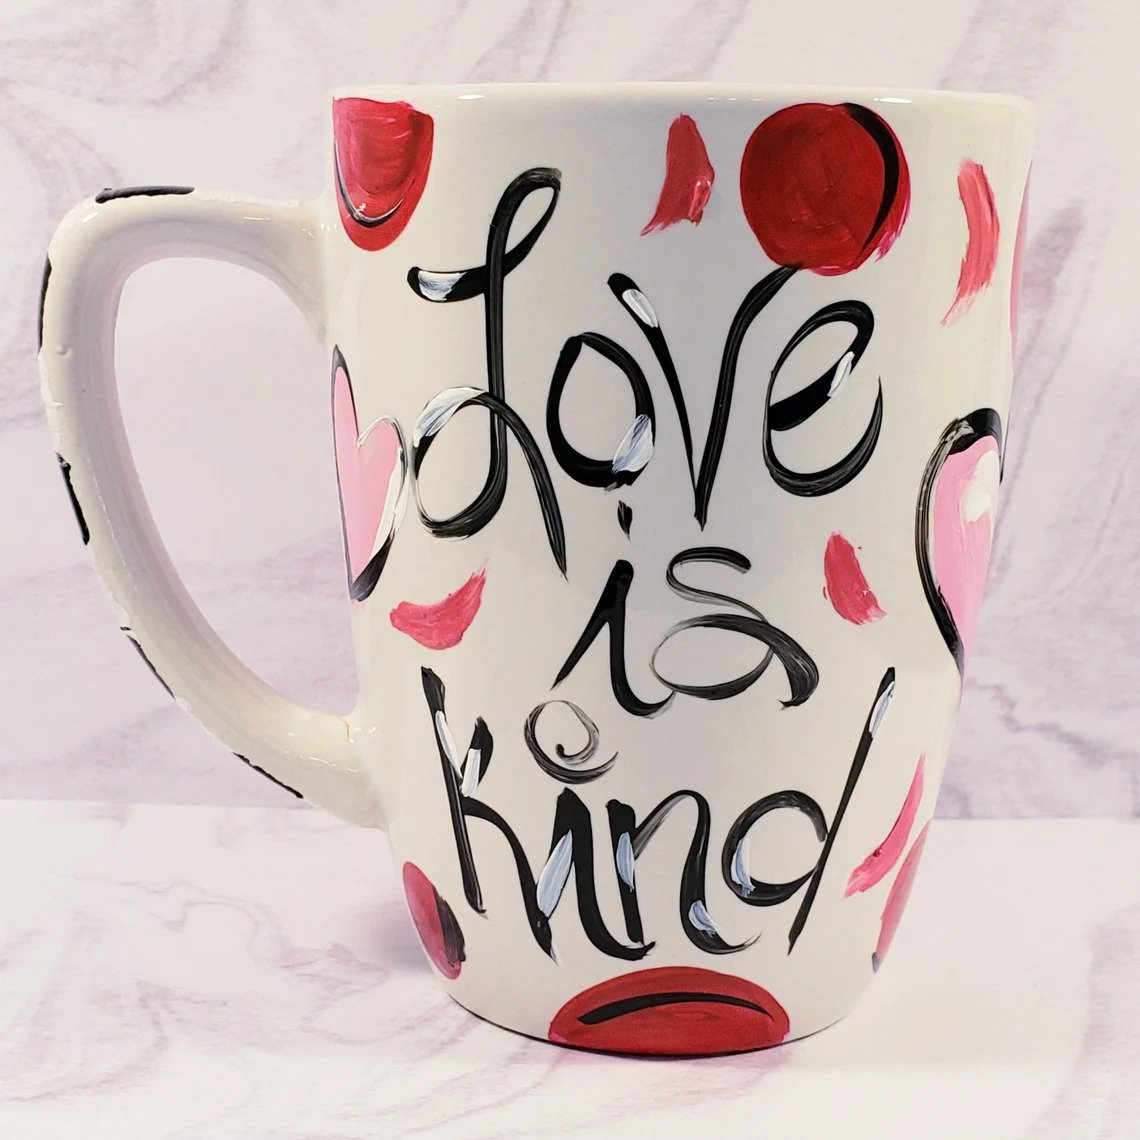 https://artisansshoponline.com/wp-content/uploads/love-is-kind-mug.jpg